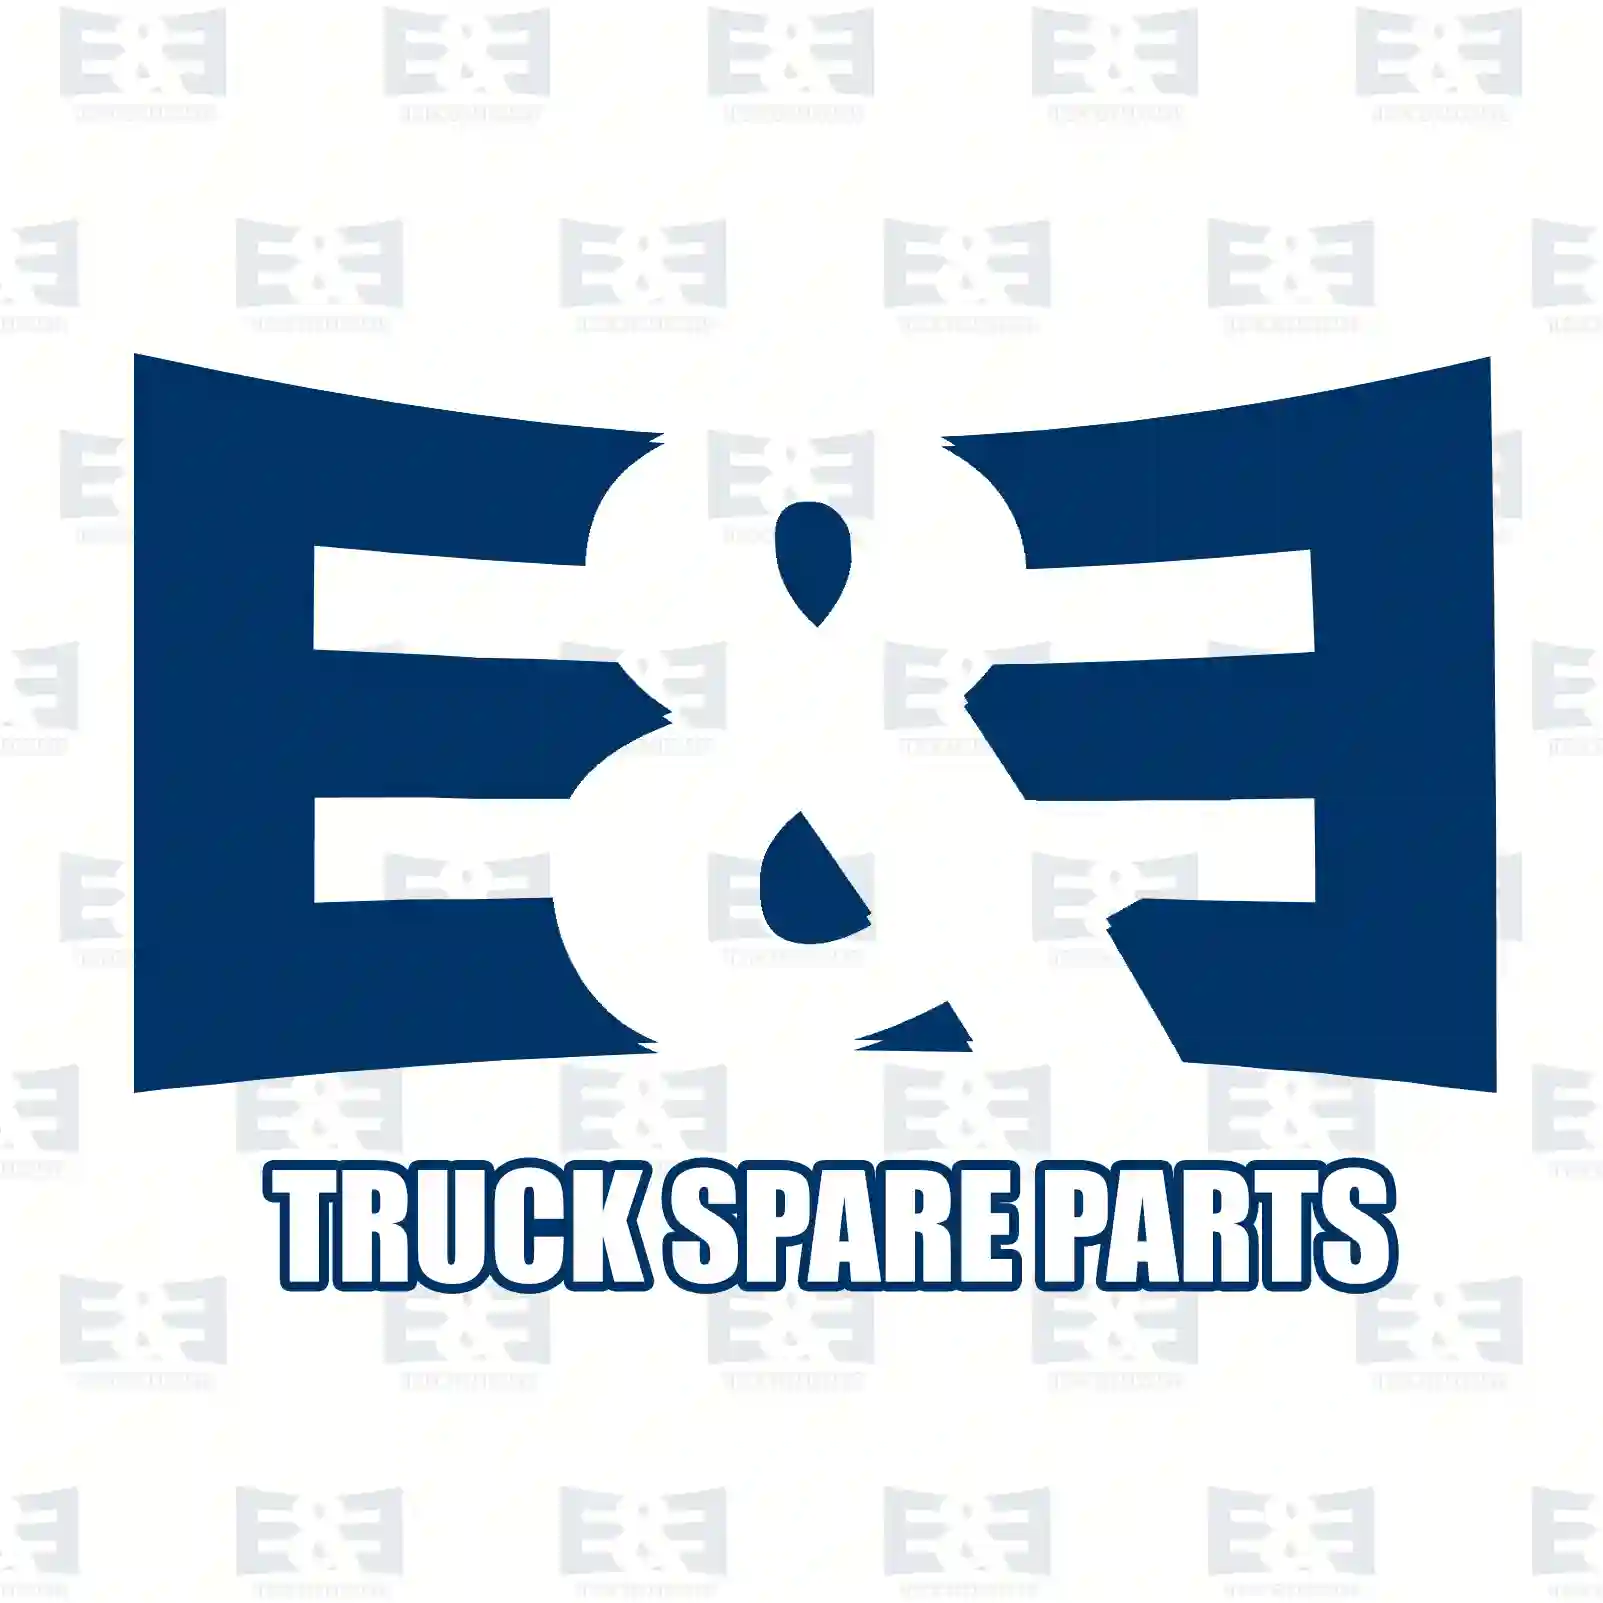 Cable set, 2E2299019, 21386223 ||  2E2299019 E&E Truck Spare Parts | Truck Spare Parts, Auotomotive Spare Parts Cable set, 2E2299019, 21386223 ||  2E2299019 E&E Truck Spare Parts | Truck Spare Parts, Auotomotive Spare Parts